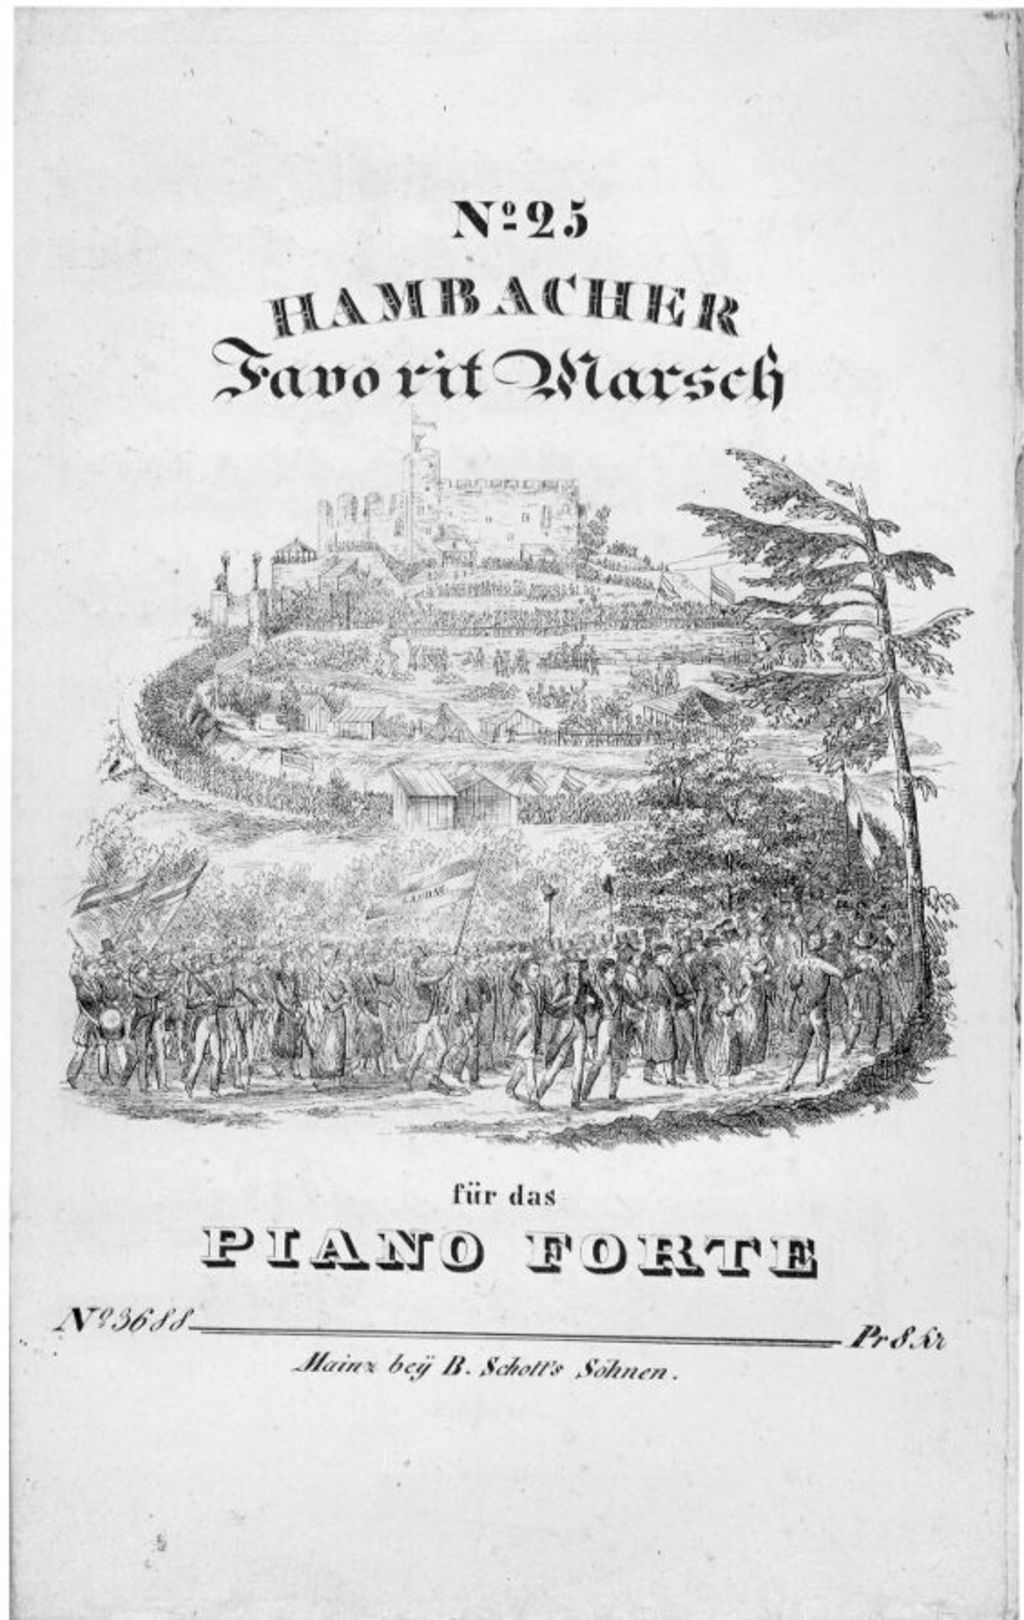 Notenschrift: "Hambacher Favorit Marsch", 1832